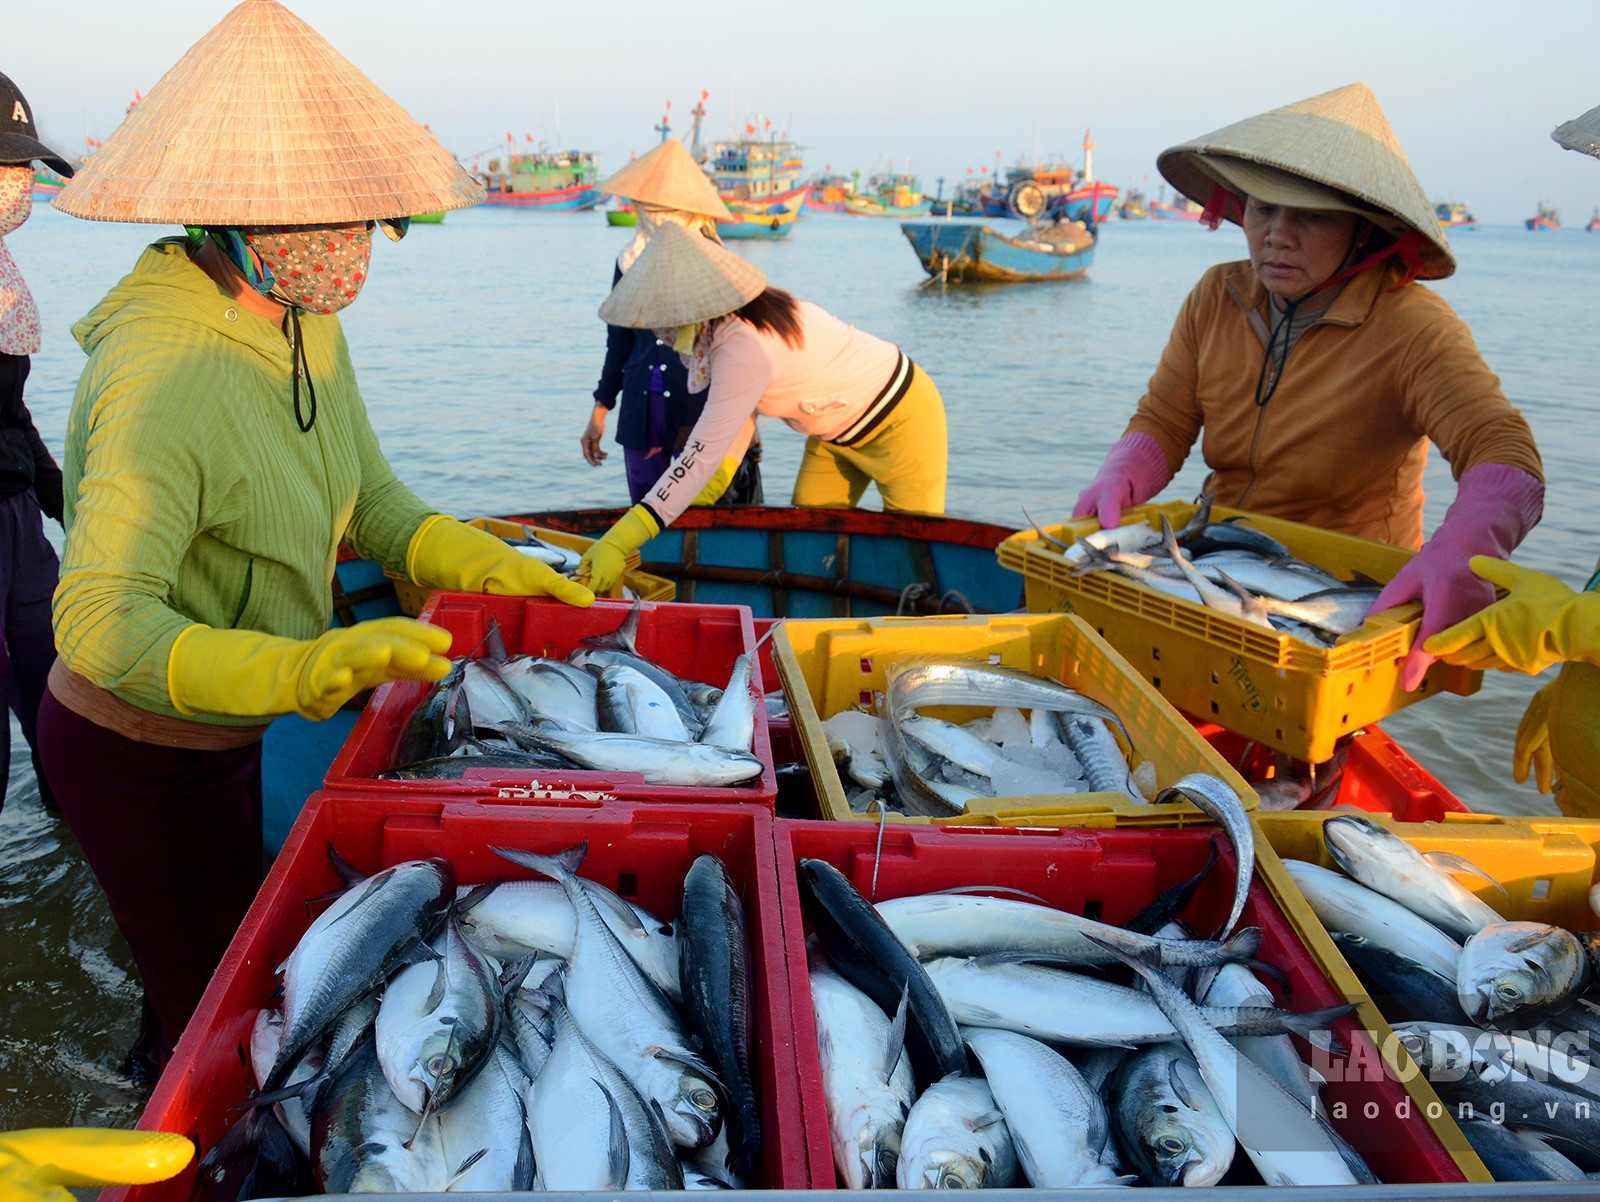 Chợ làng biển ở Quảng Ngãi, trên trời ánh bình minh, dưới tấp nập người mua bán, toàn thấy cá là cá - Ảnh 4.